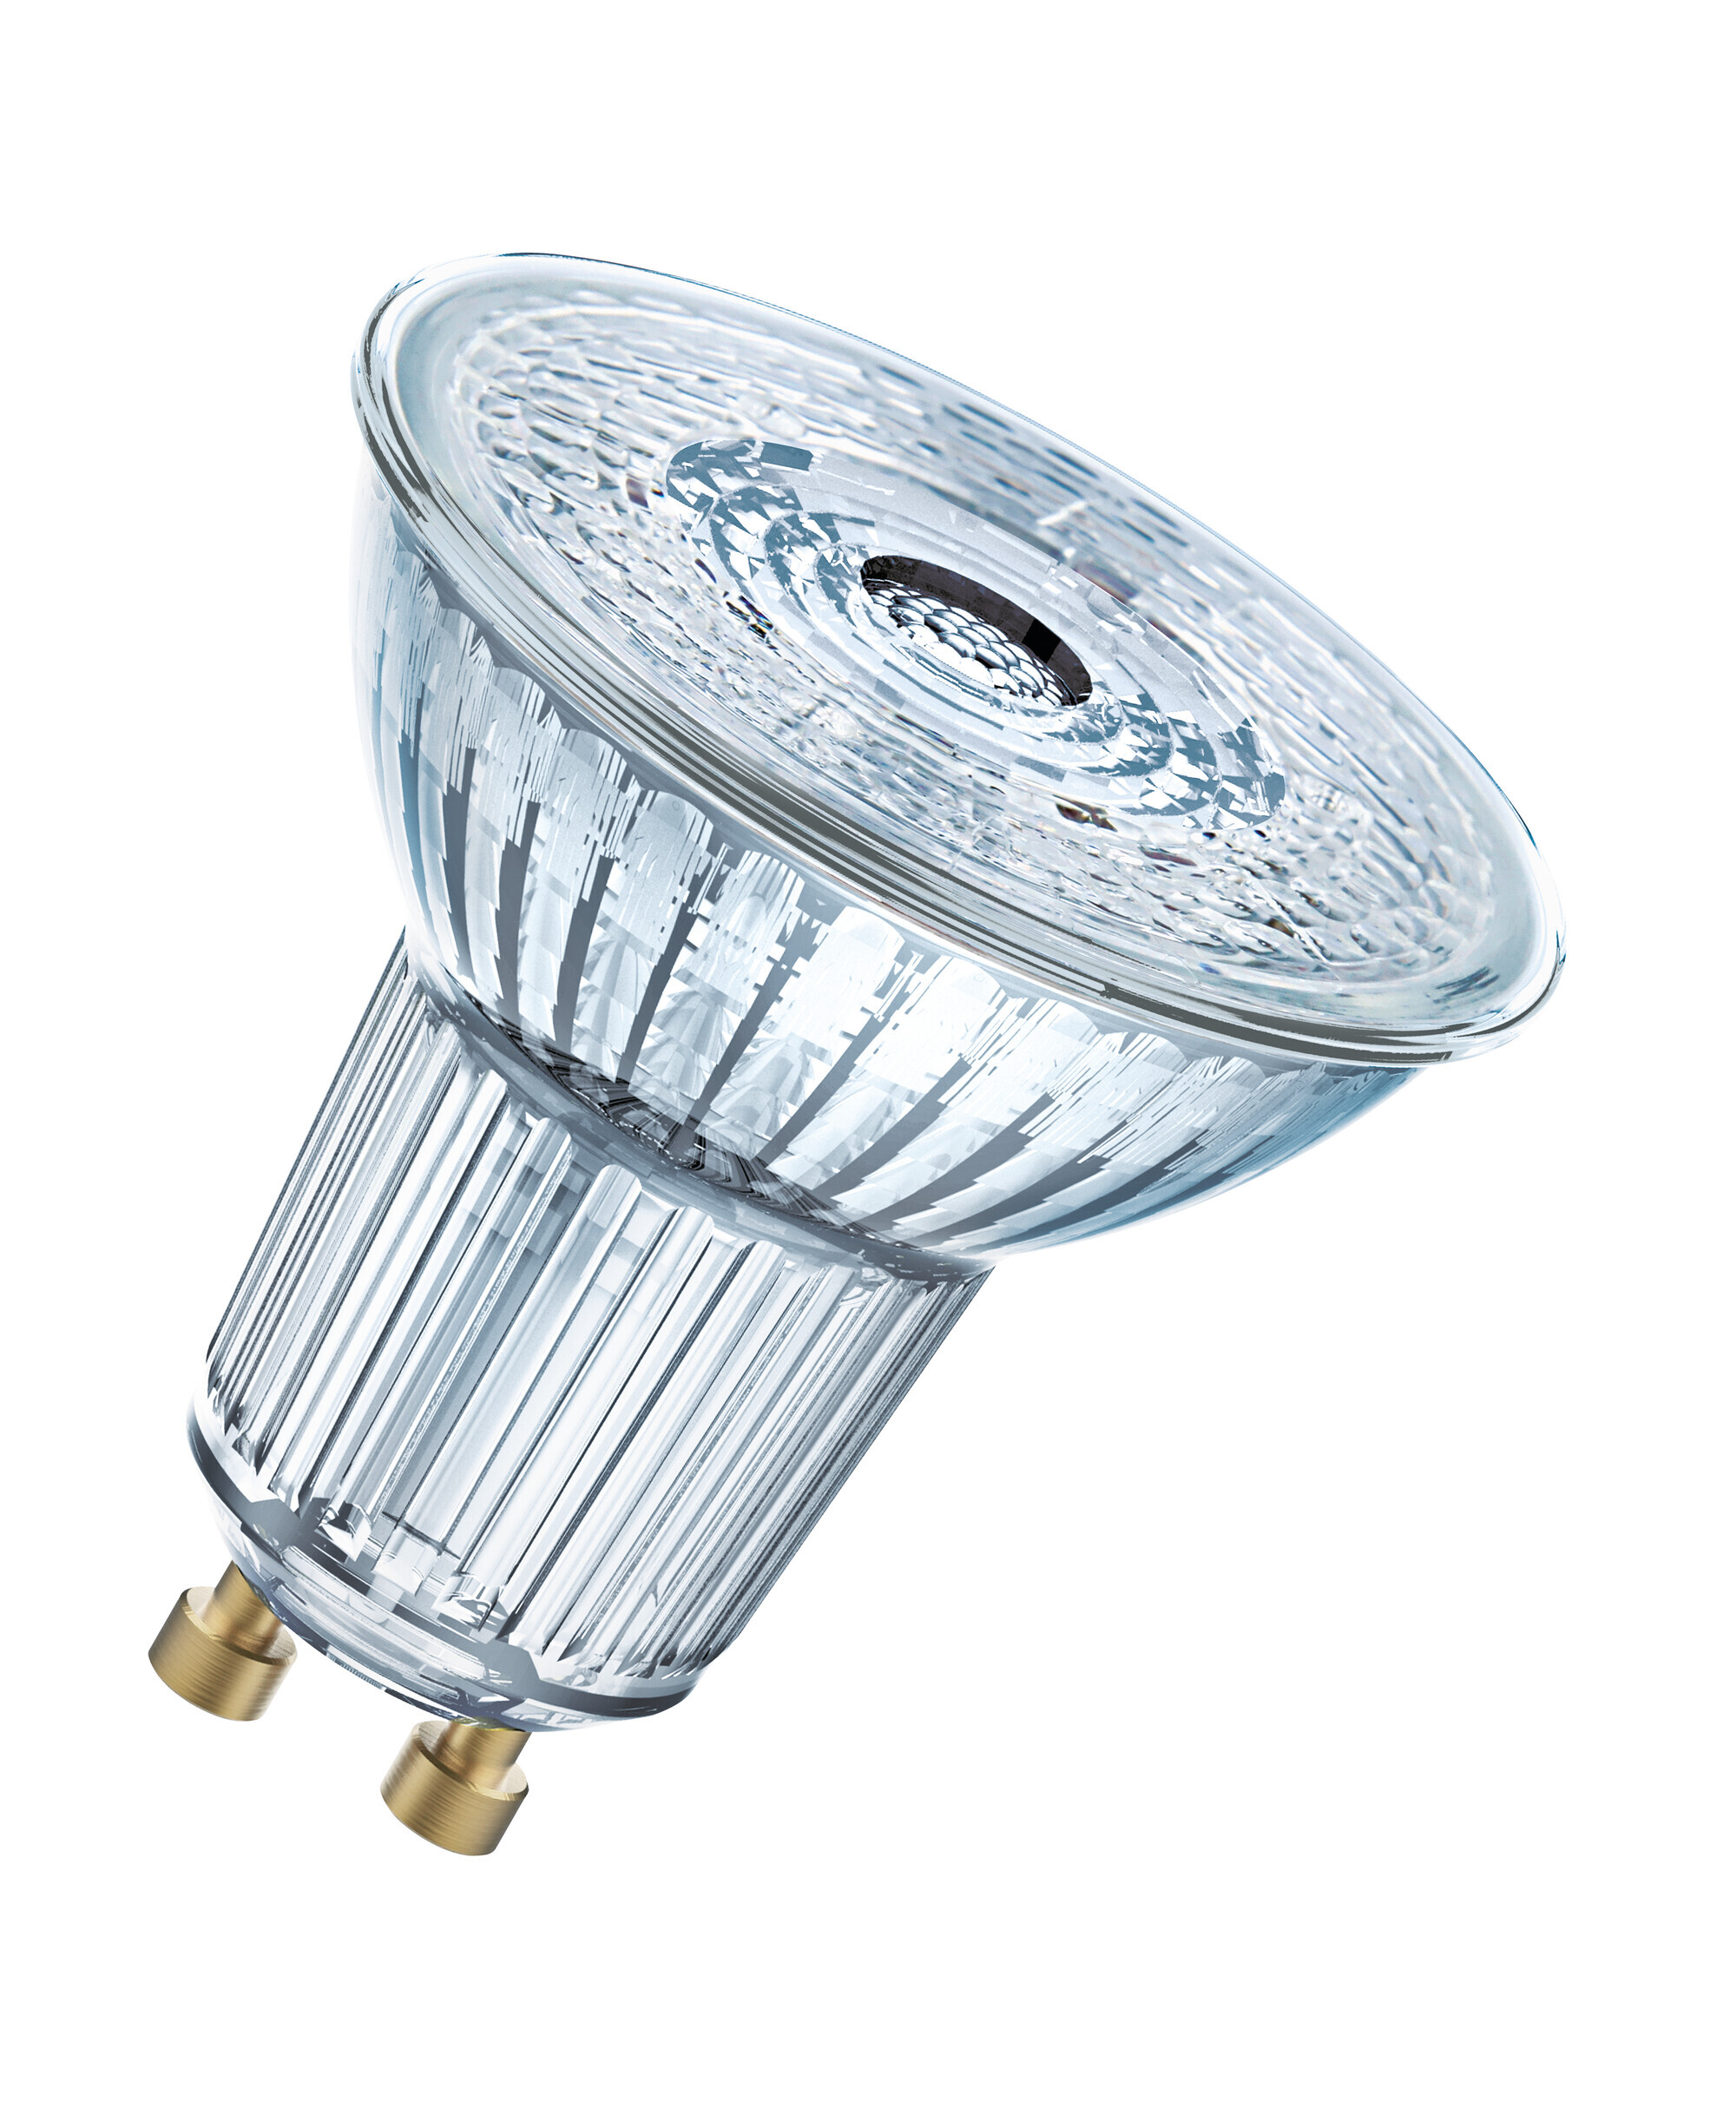 OSRAM Lamps OSRAM Superstar reflectorlamp, GU10-basis helder glas ,Warm wit (2700K), 230 Lumen, substituut voor 35W-verlichtingsmiddel dimbaar, 1-Pak